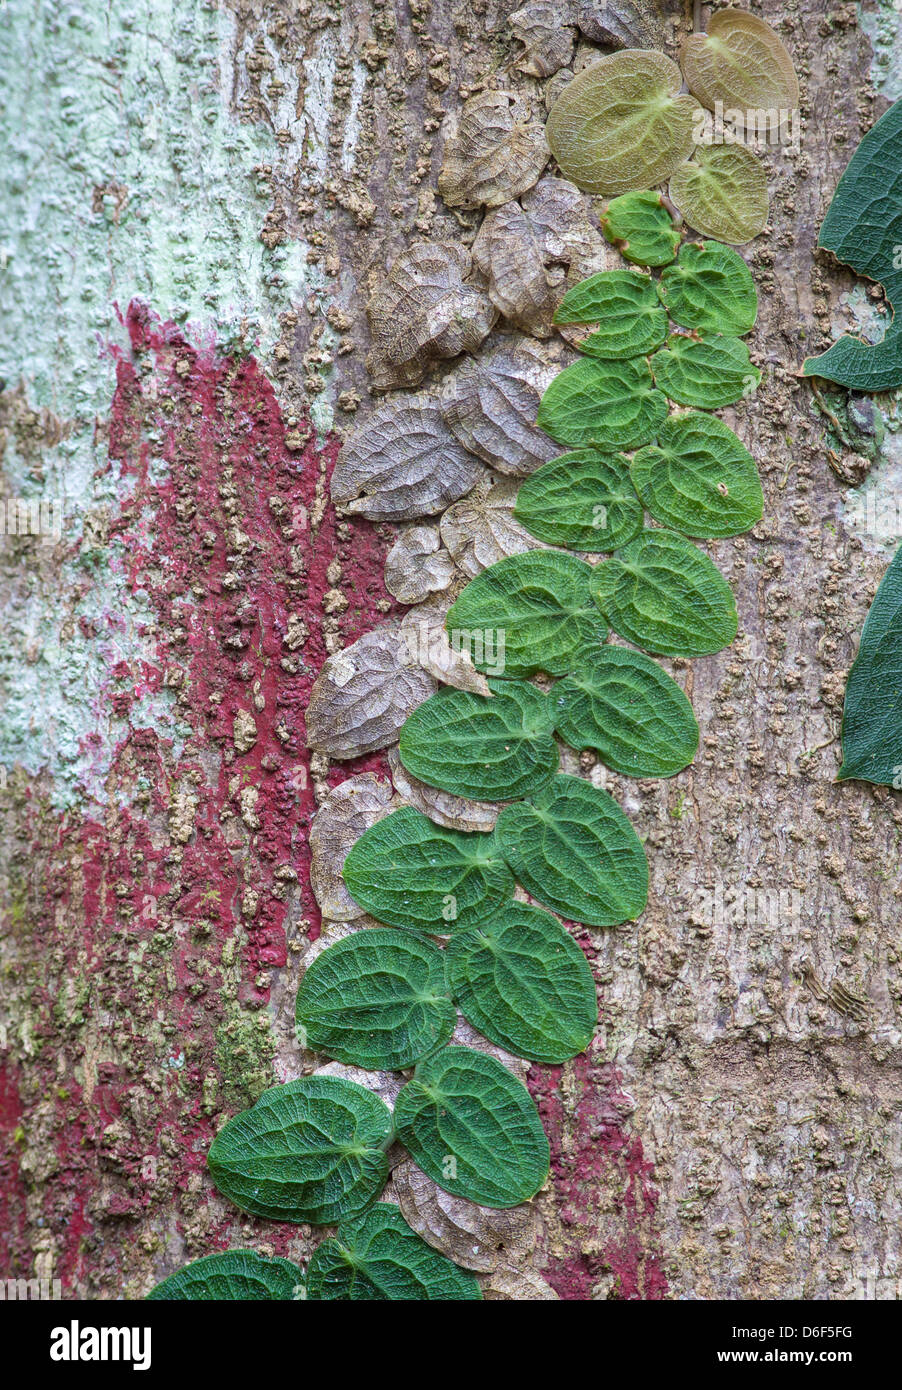 Forêt de pluie colorées tronc recouvert d'algues rouges et vert pâle et plat feuilles de vigne rampante dans différentes teintes Bornéo Banque D'Images